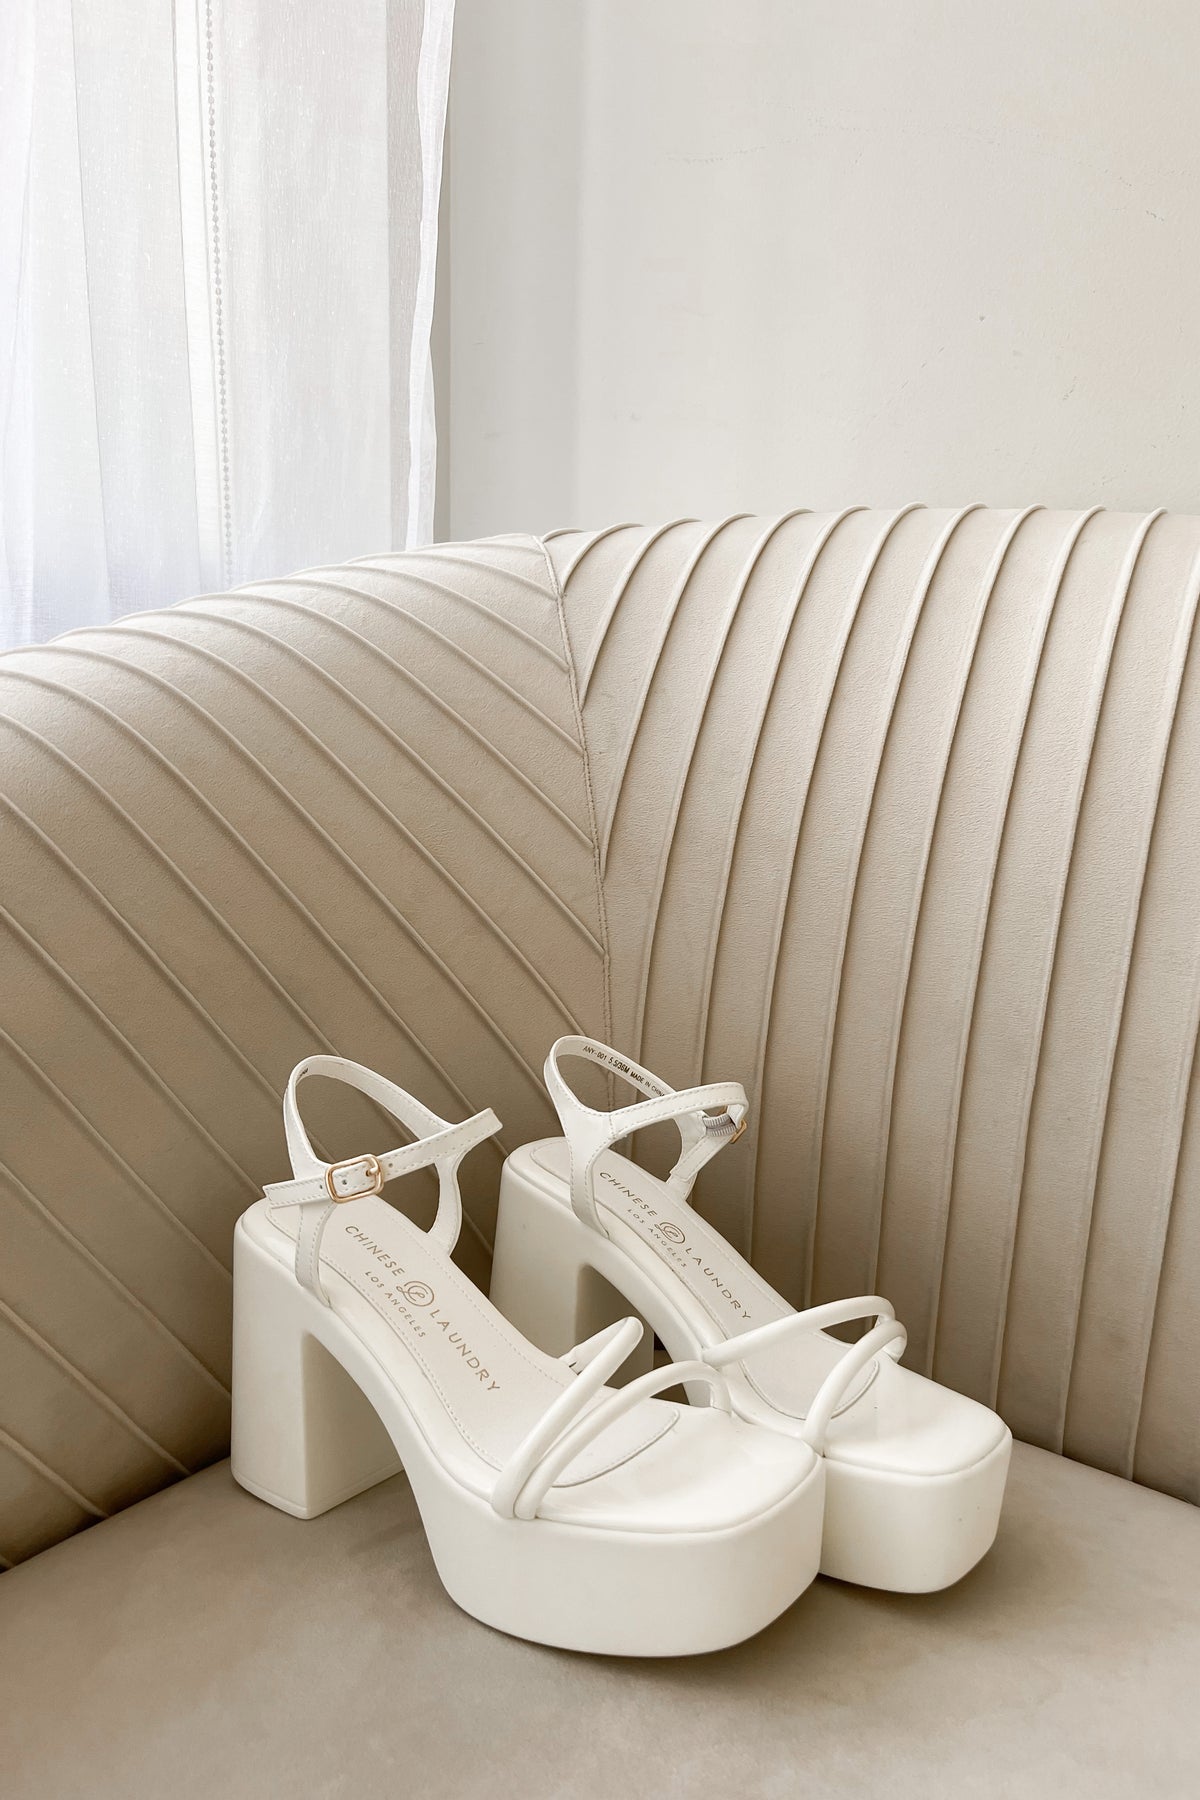 white heels on trendy sofa